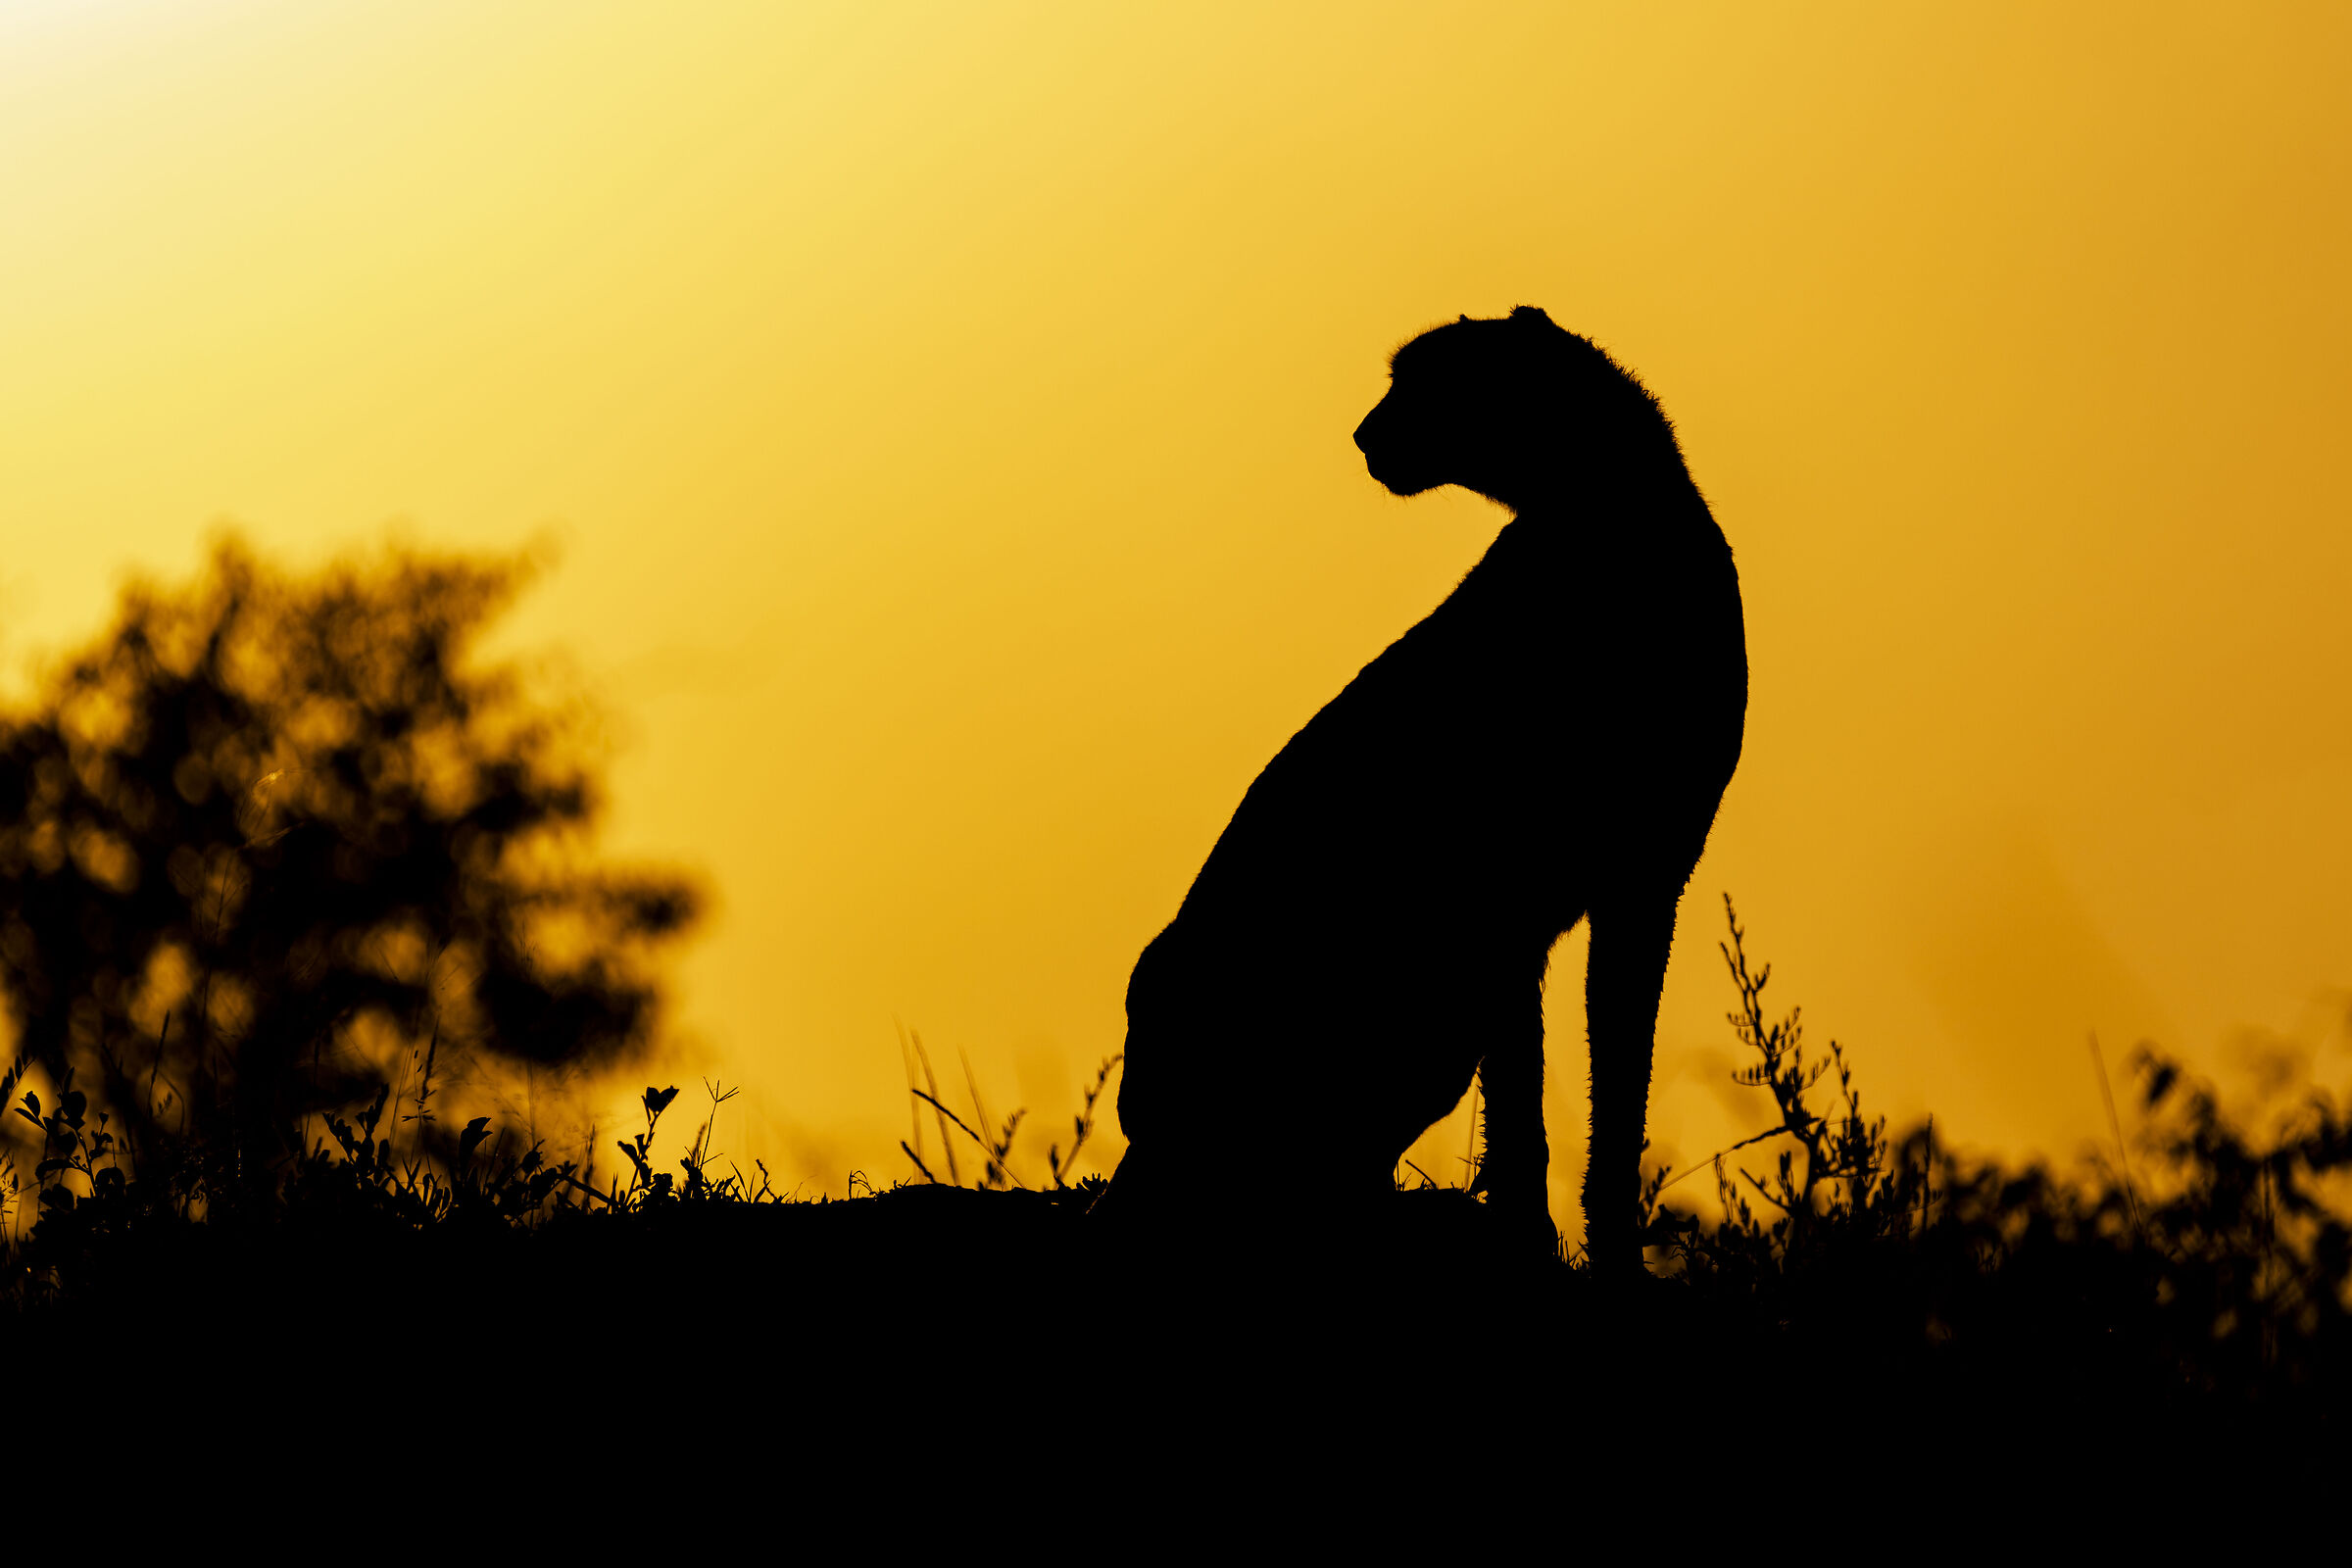 Cheetah at dawn...